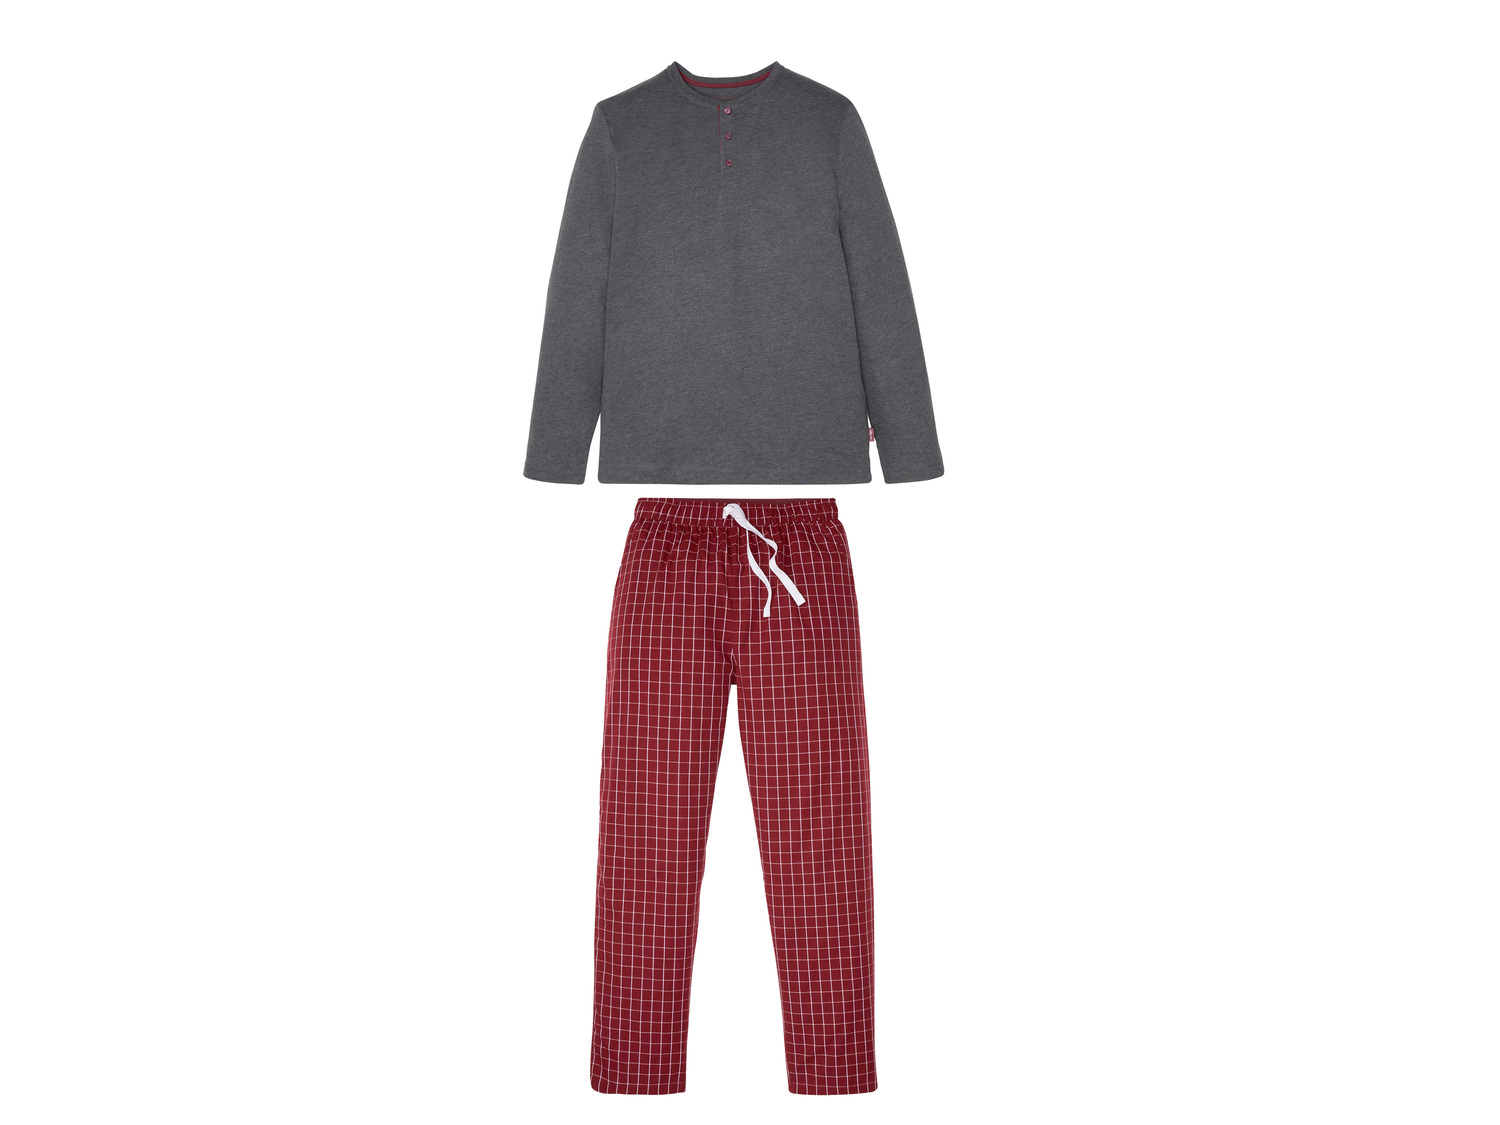 Pyjama homme , le prix 9.99 € 
- Du S au XL selon modèle.
- Ex. Haut 60 % coton ...